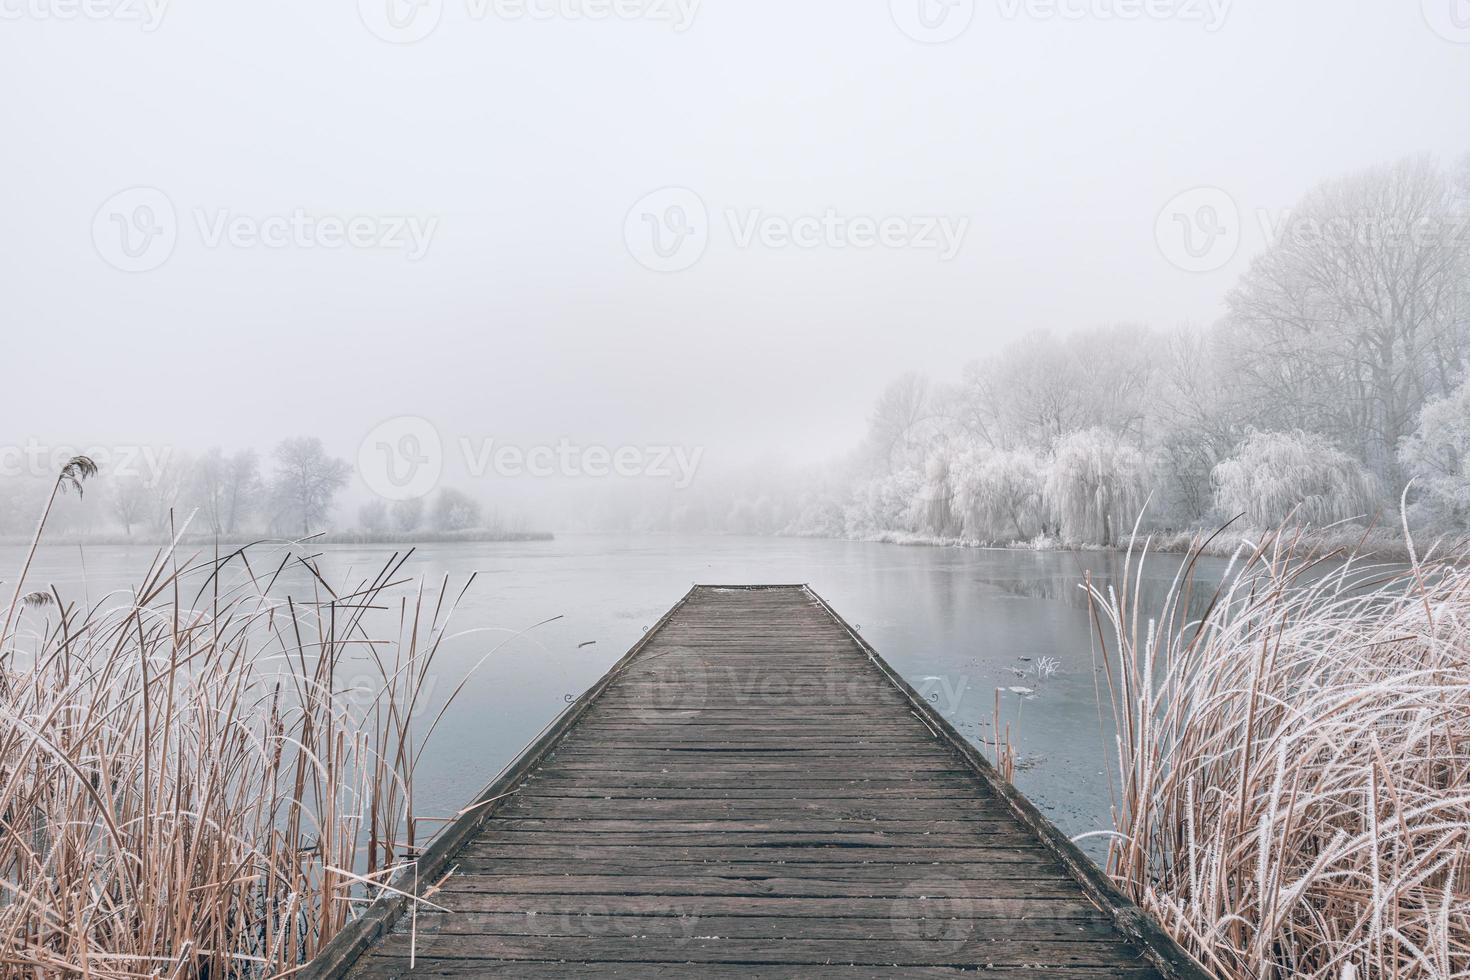 paysage d'hiver du soir. jetée en bois sur un magnifique lac gelé. arbres avec givre, paysages d'hiver saisonniers calmes. vue paisible et blanche photo